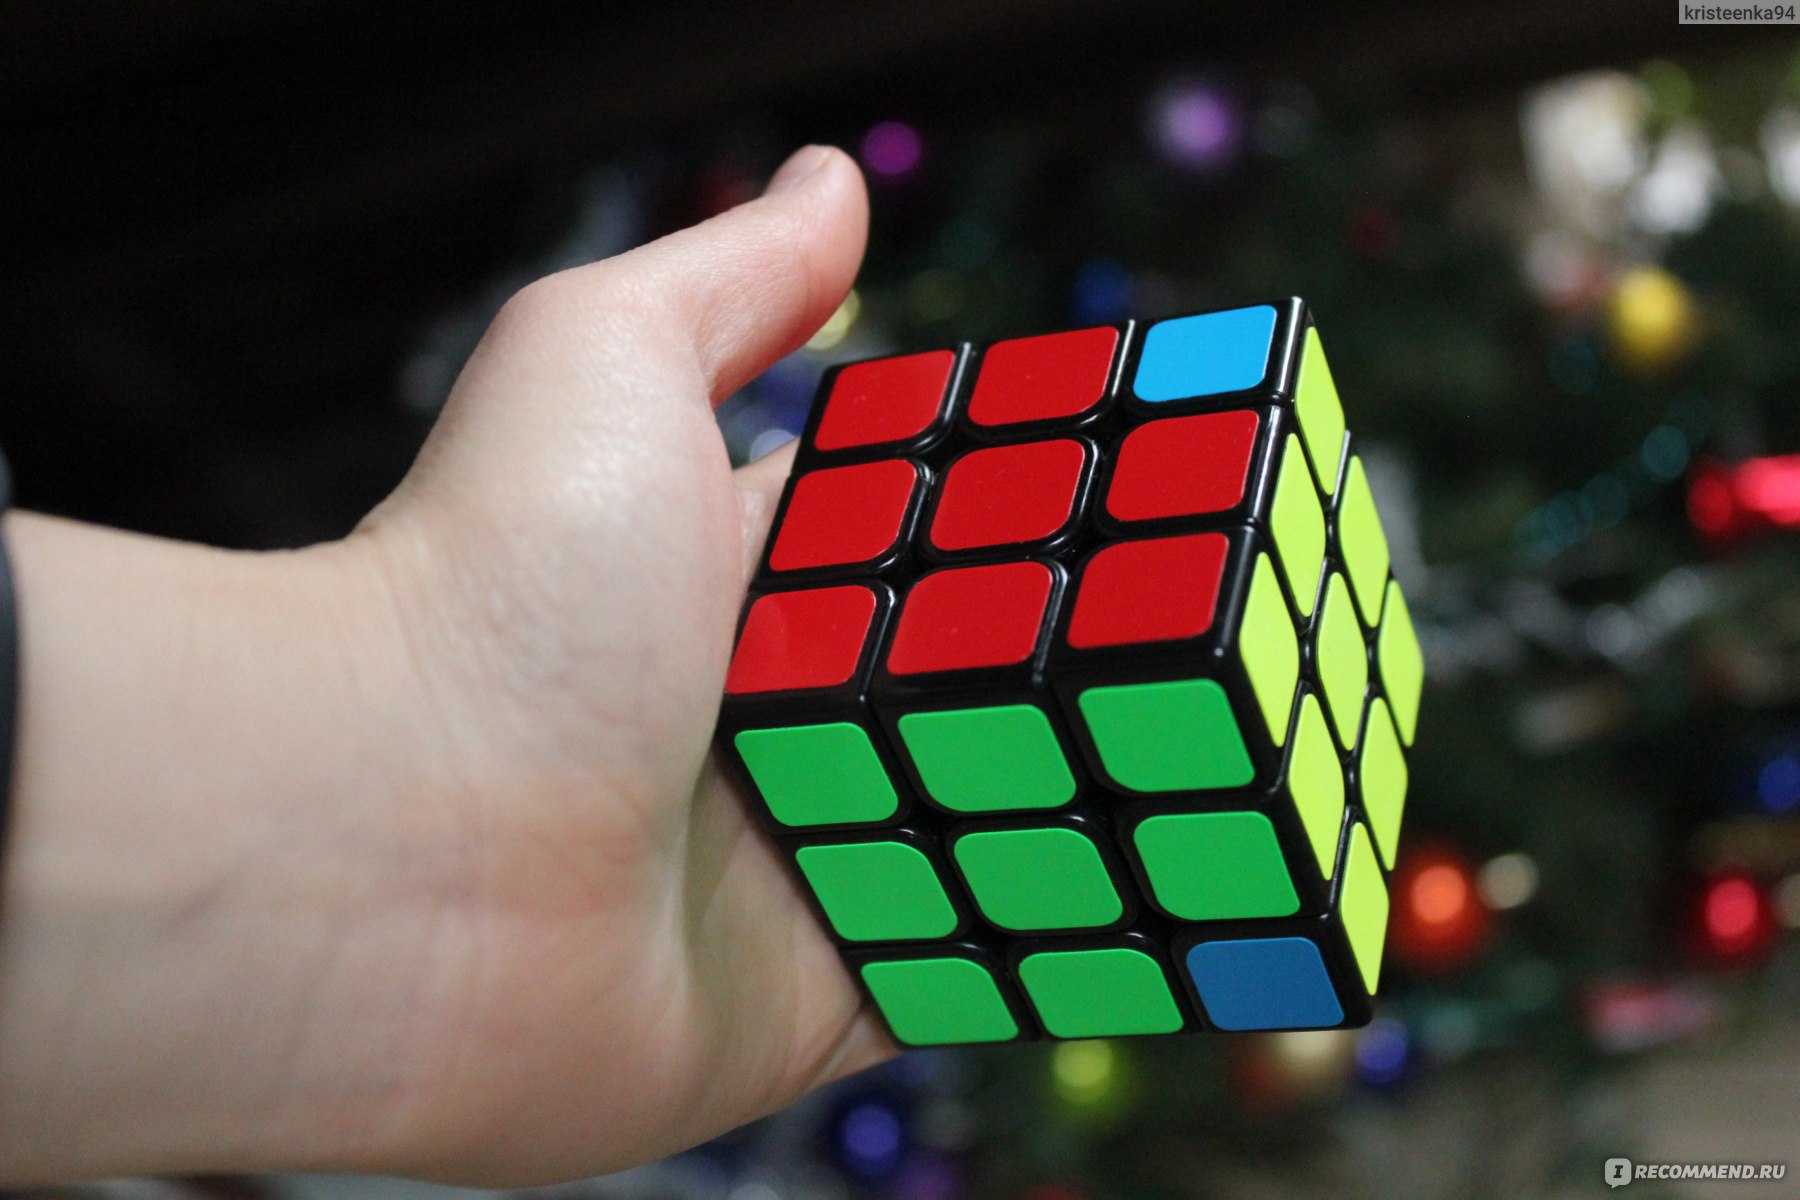 Simulador cubo rubik 3x3x3 v1.3.0 программа для изучения алгоритмов сборки кубика рубика